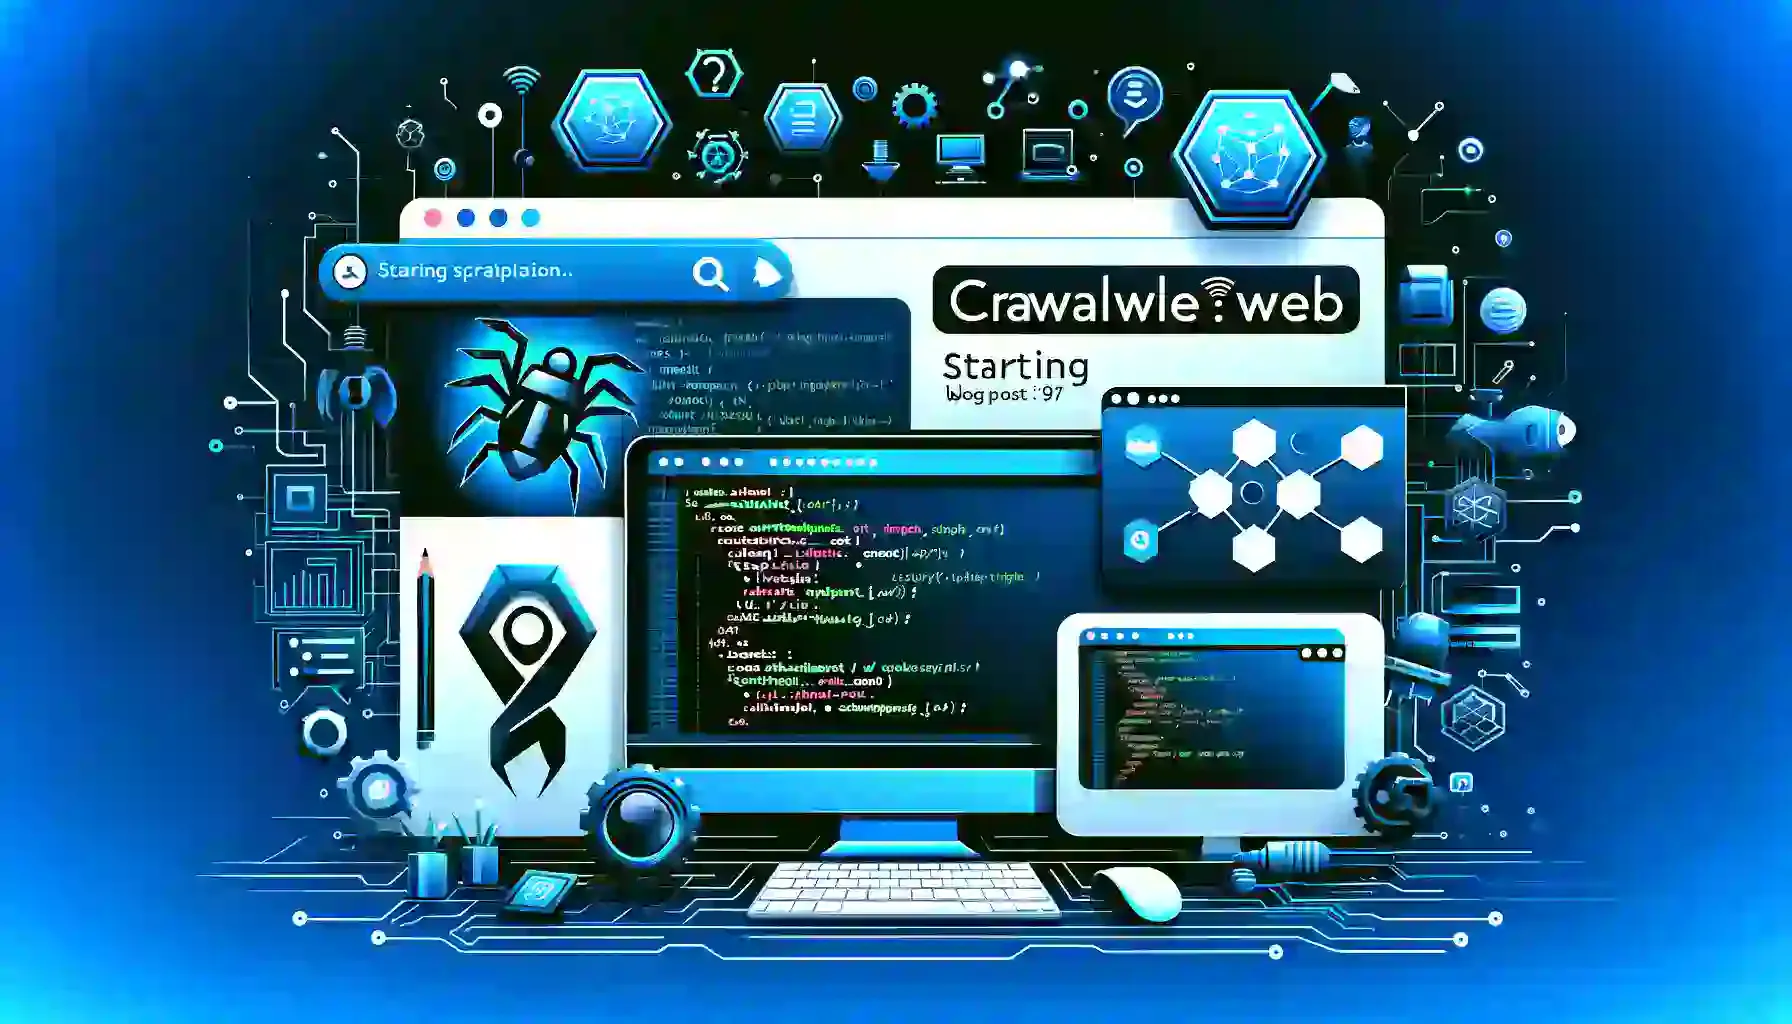 Crawleeは、Webスクレイピングを効率化するためのオープンソースライブラリです。この記事では、Crawleeの基本概念やライフサイクル、利用方法について、サンプルコードやMermaidを使った図解を交えて解説します。Crawleeを使ってWebスクレイピングを始めるための知識が身につきます。